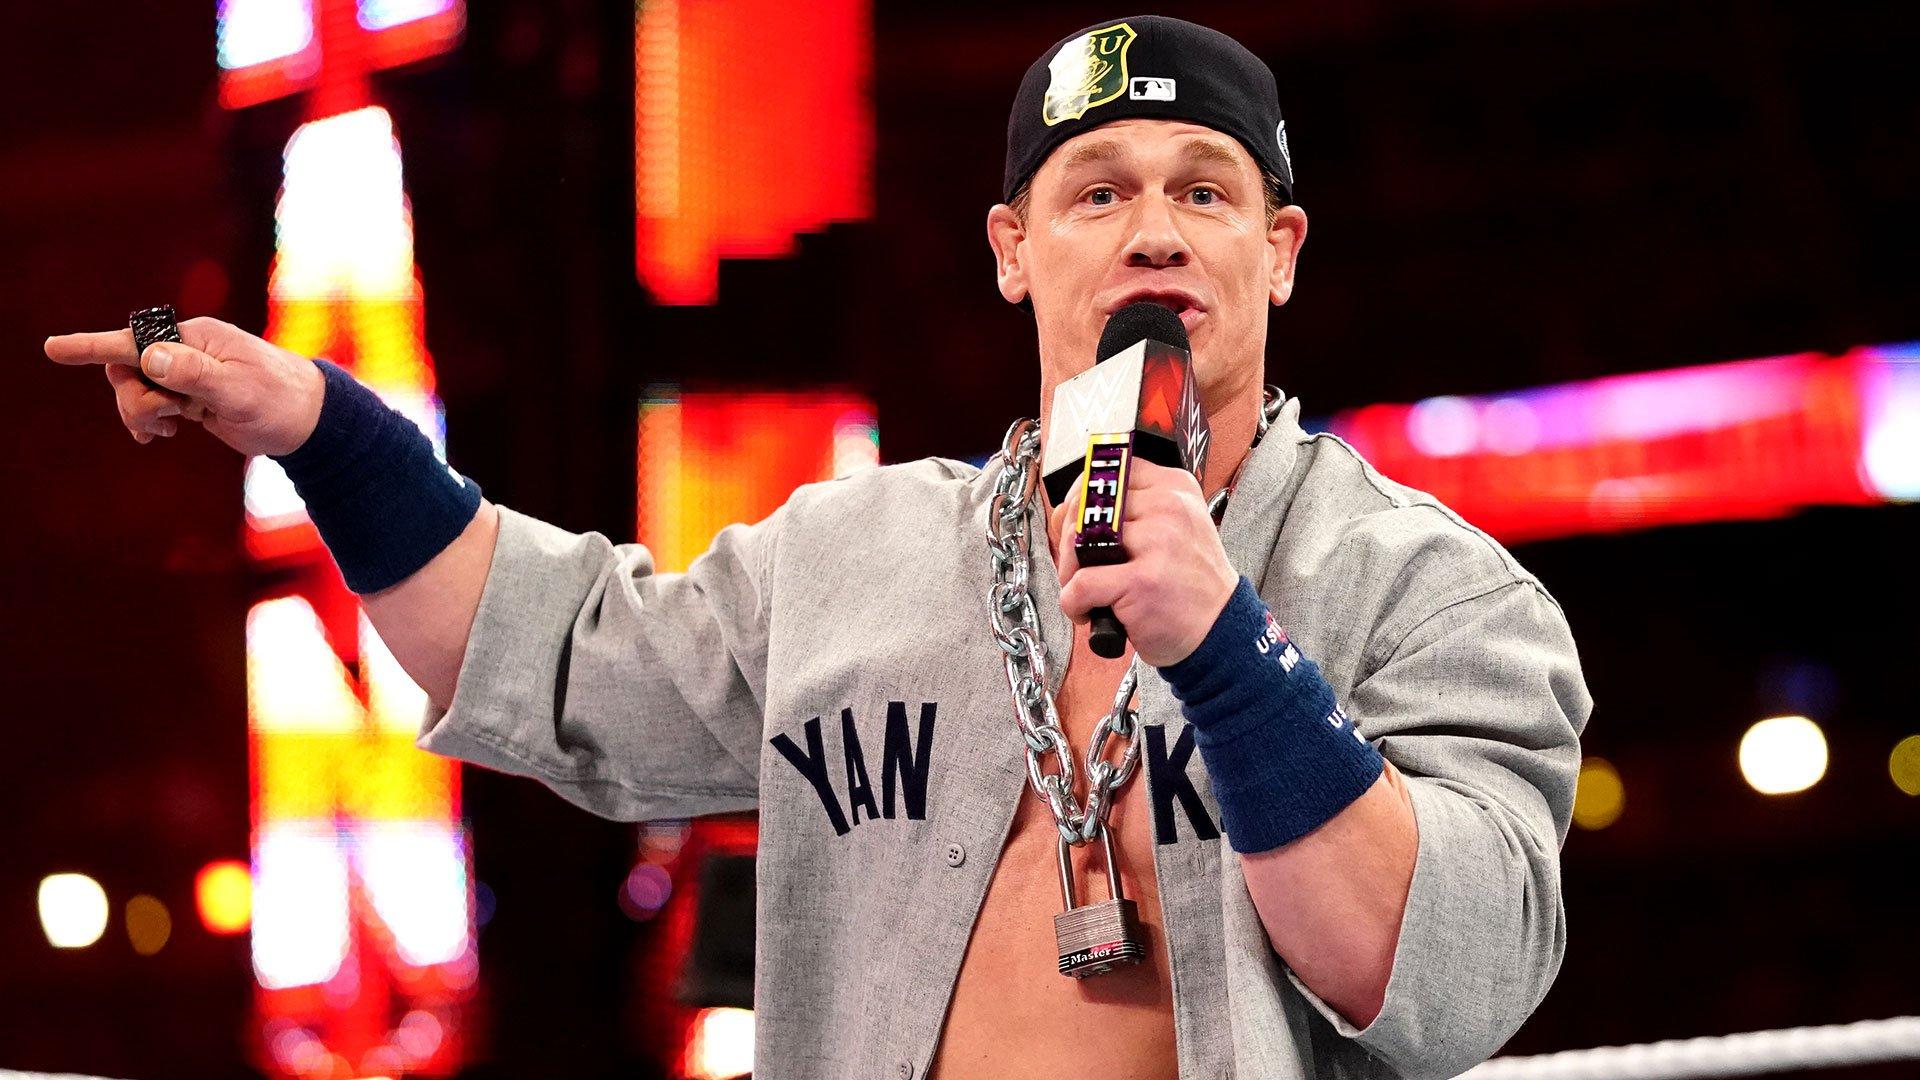 John Cena returns as the Dr. of Thuganomics to verbally assault